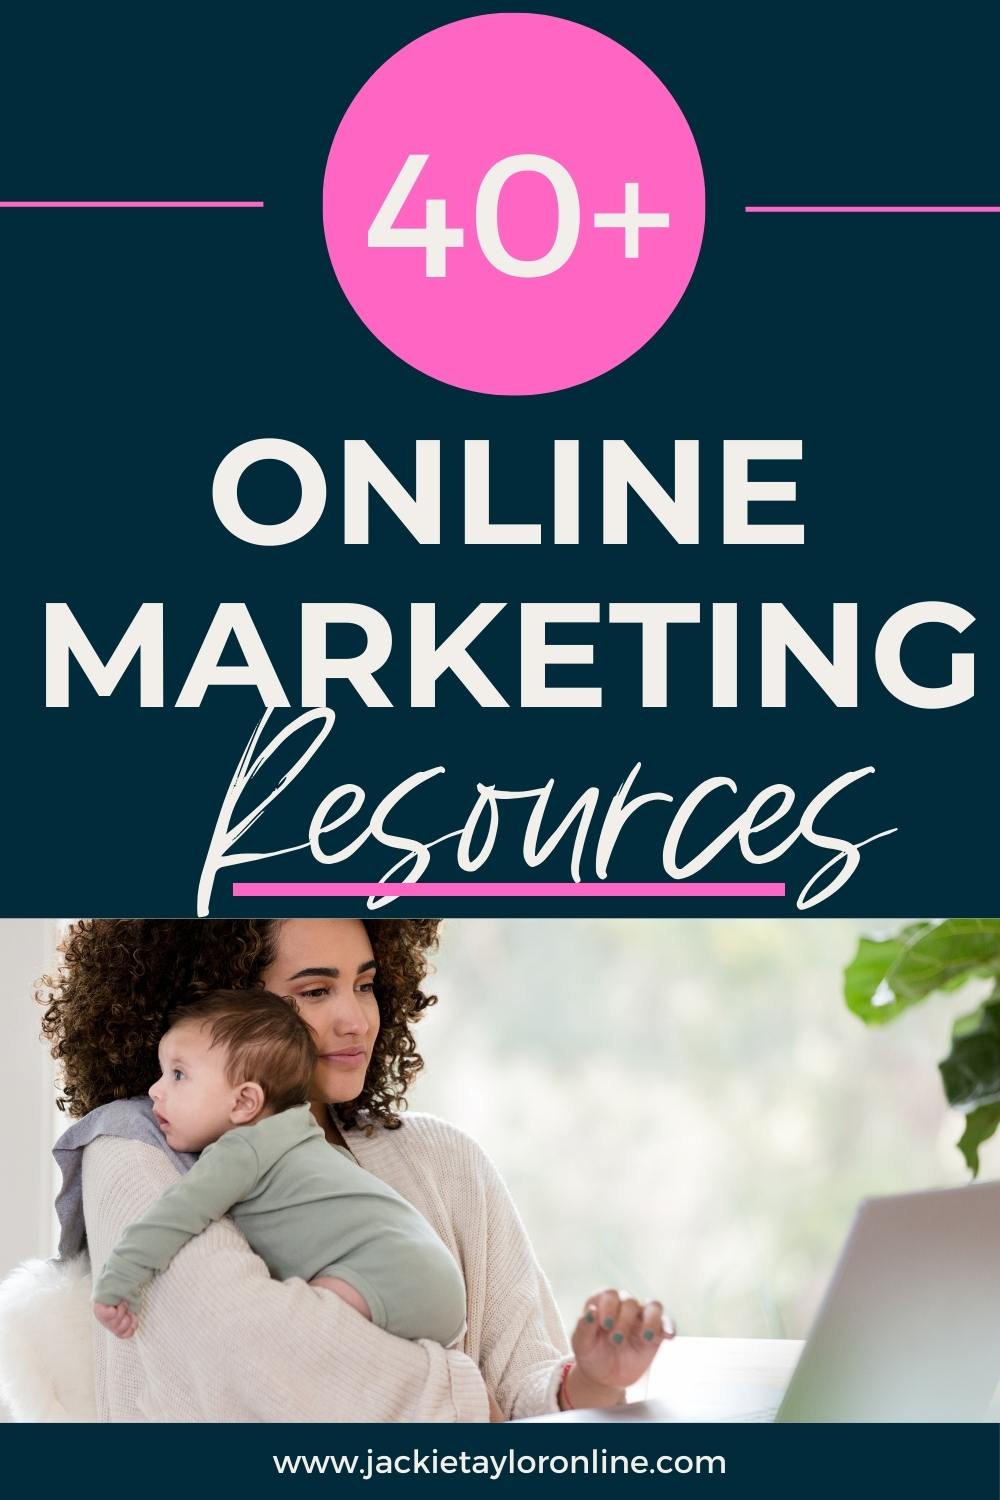 40+ Online Marketing Resources